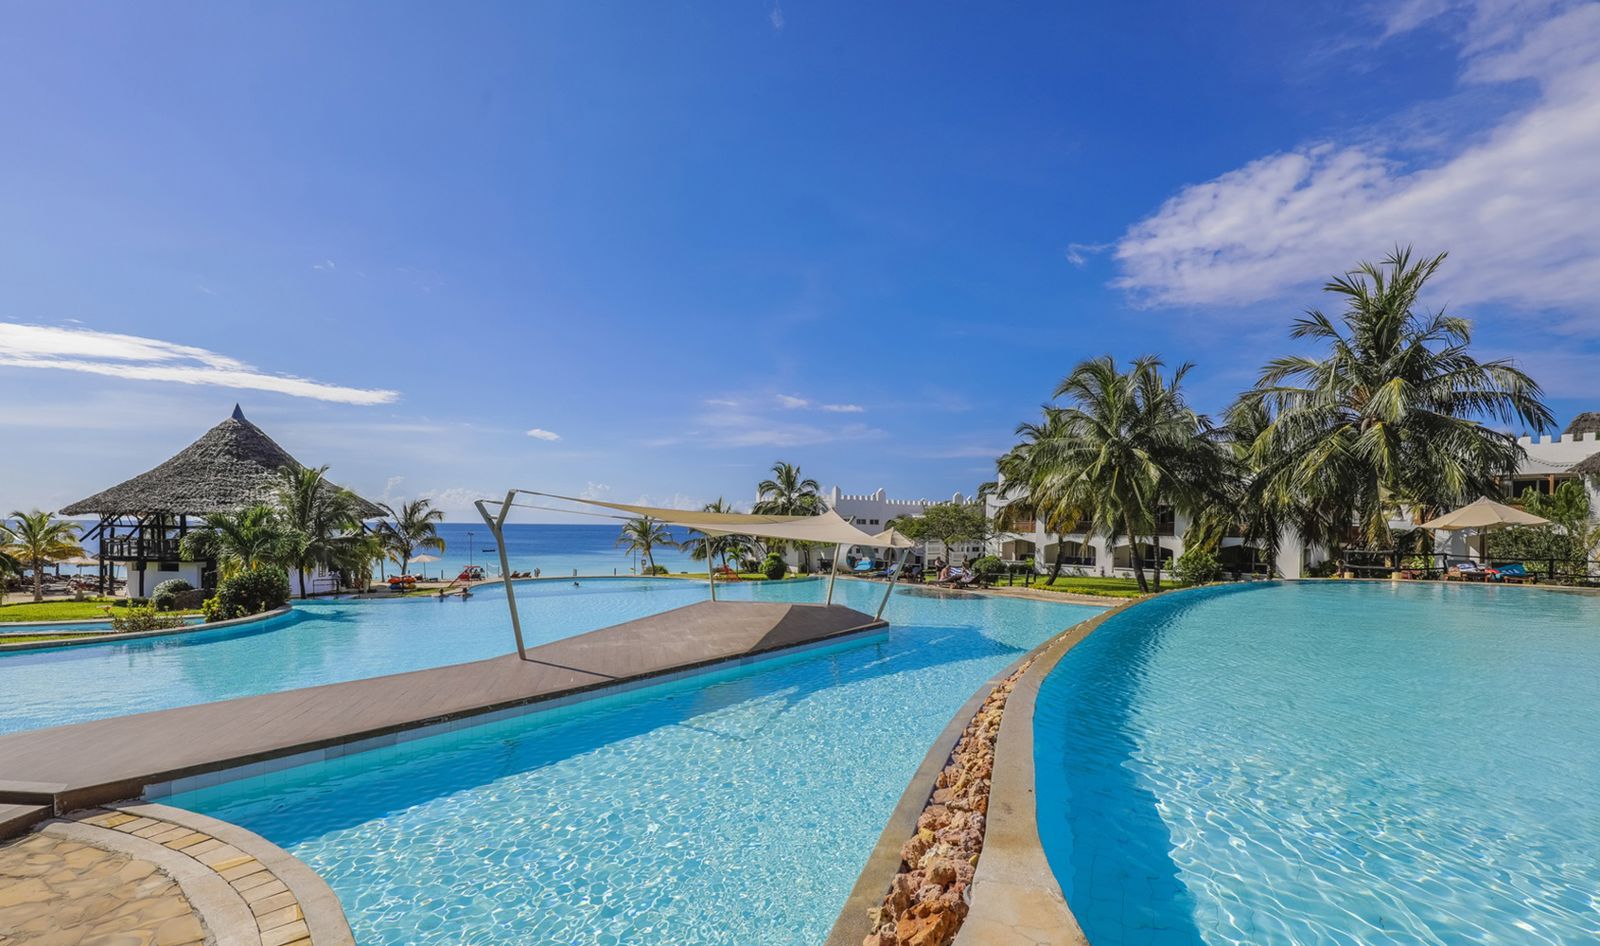 Royal Zanzibar Beach Resort - Tanzania - Zanzibar - Nungwi